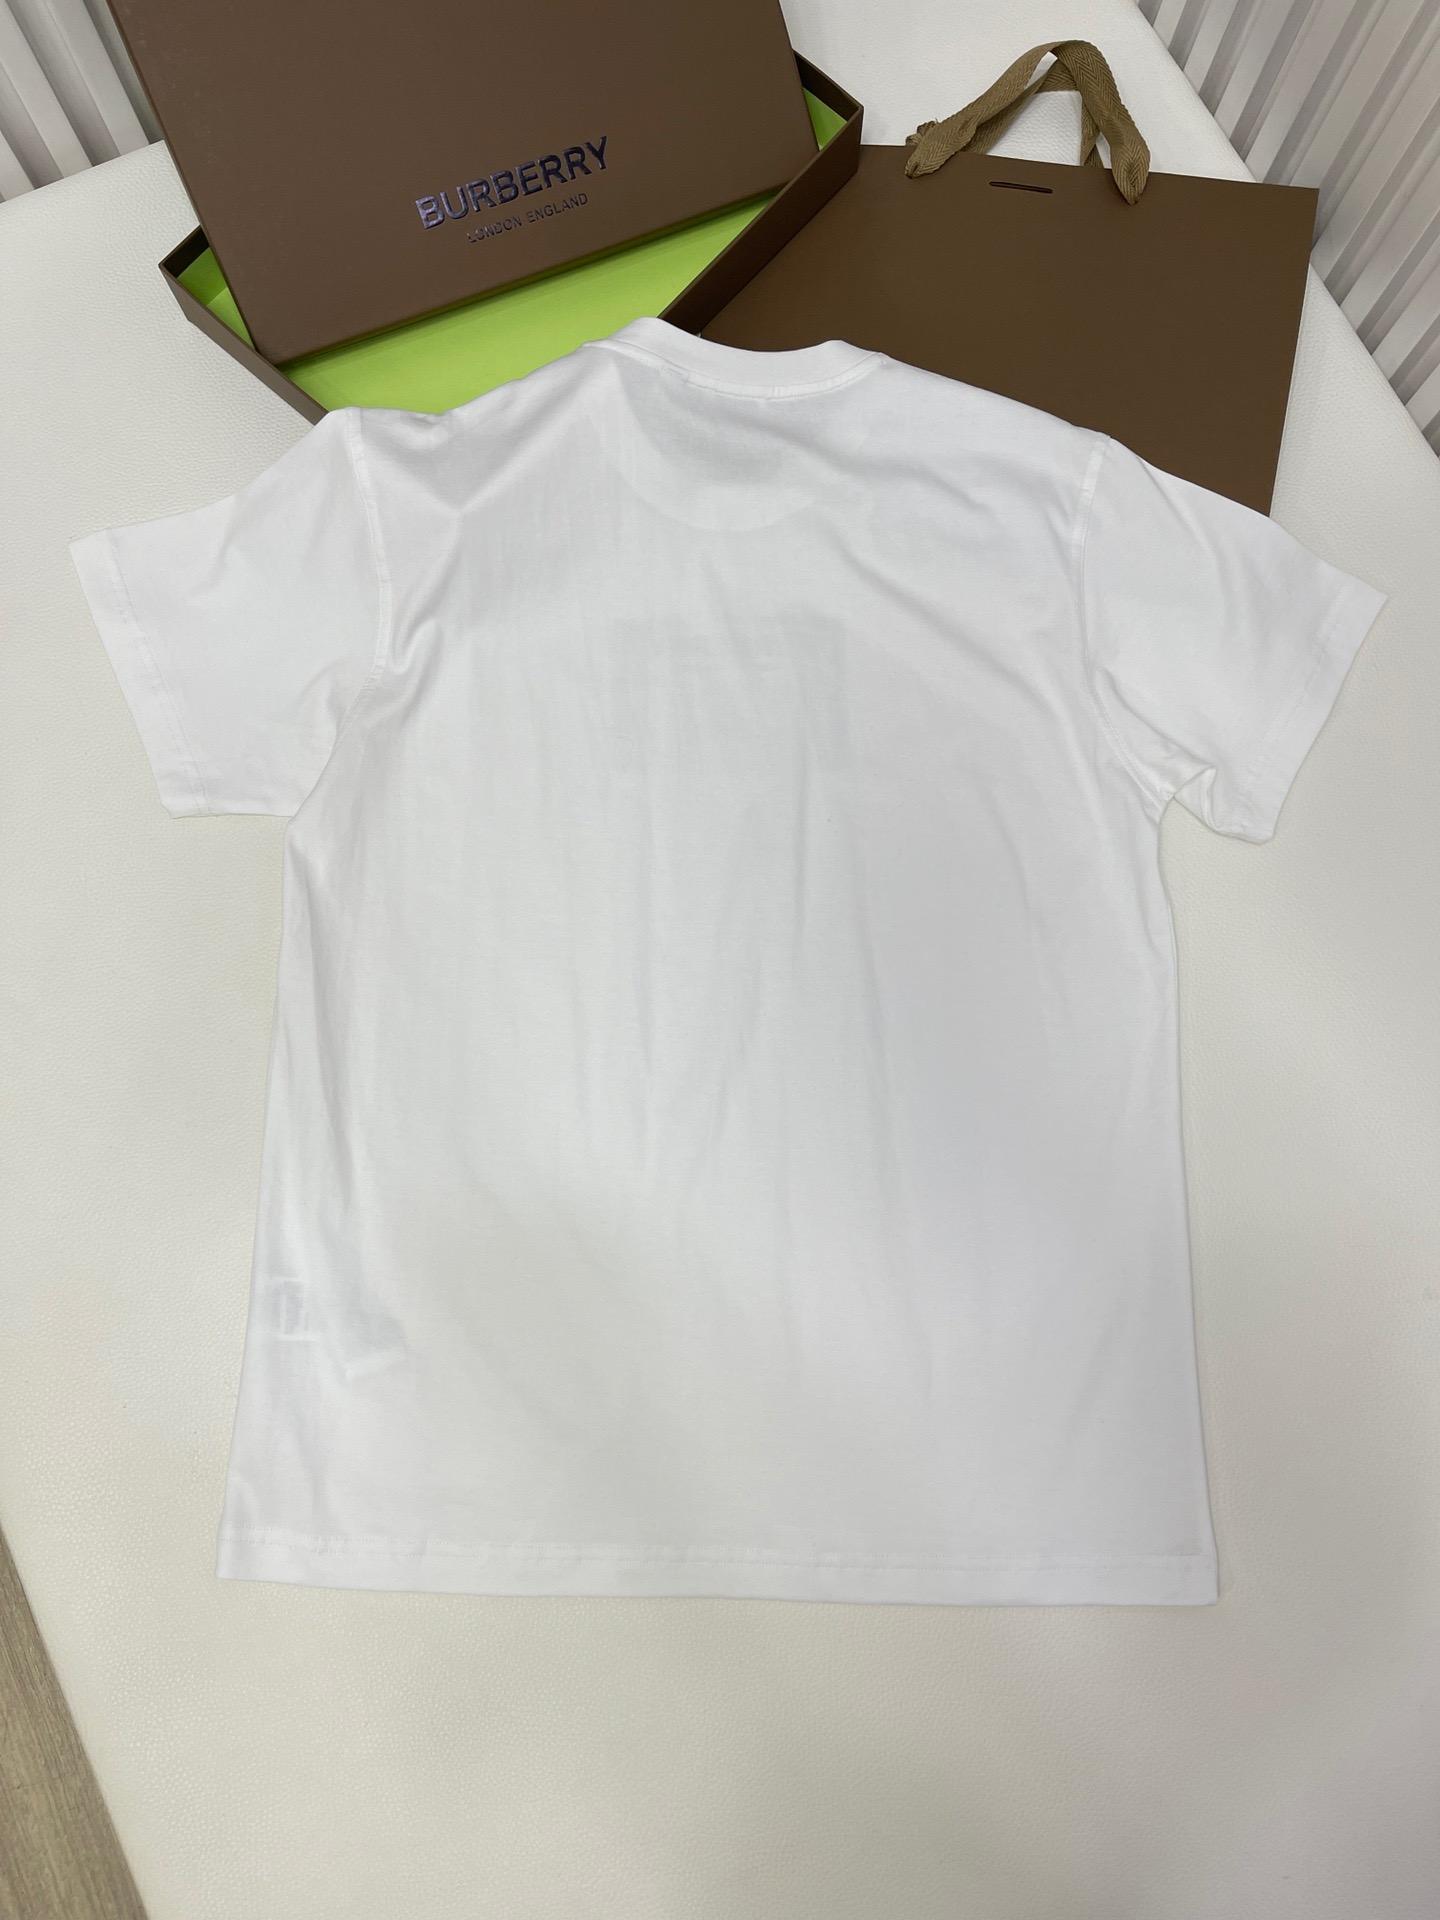 prorsum-label-cotton-t-shirt-6601_16845013903-1000